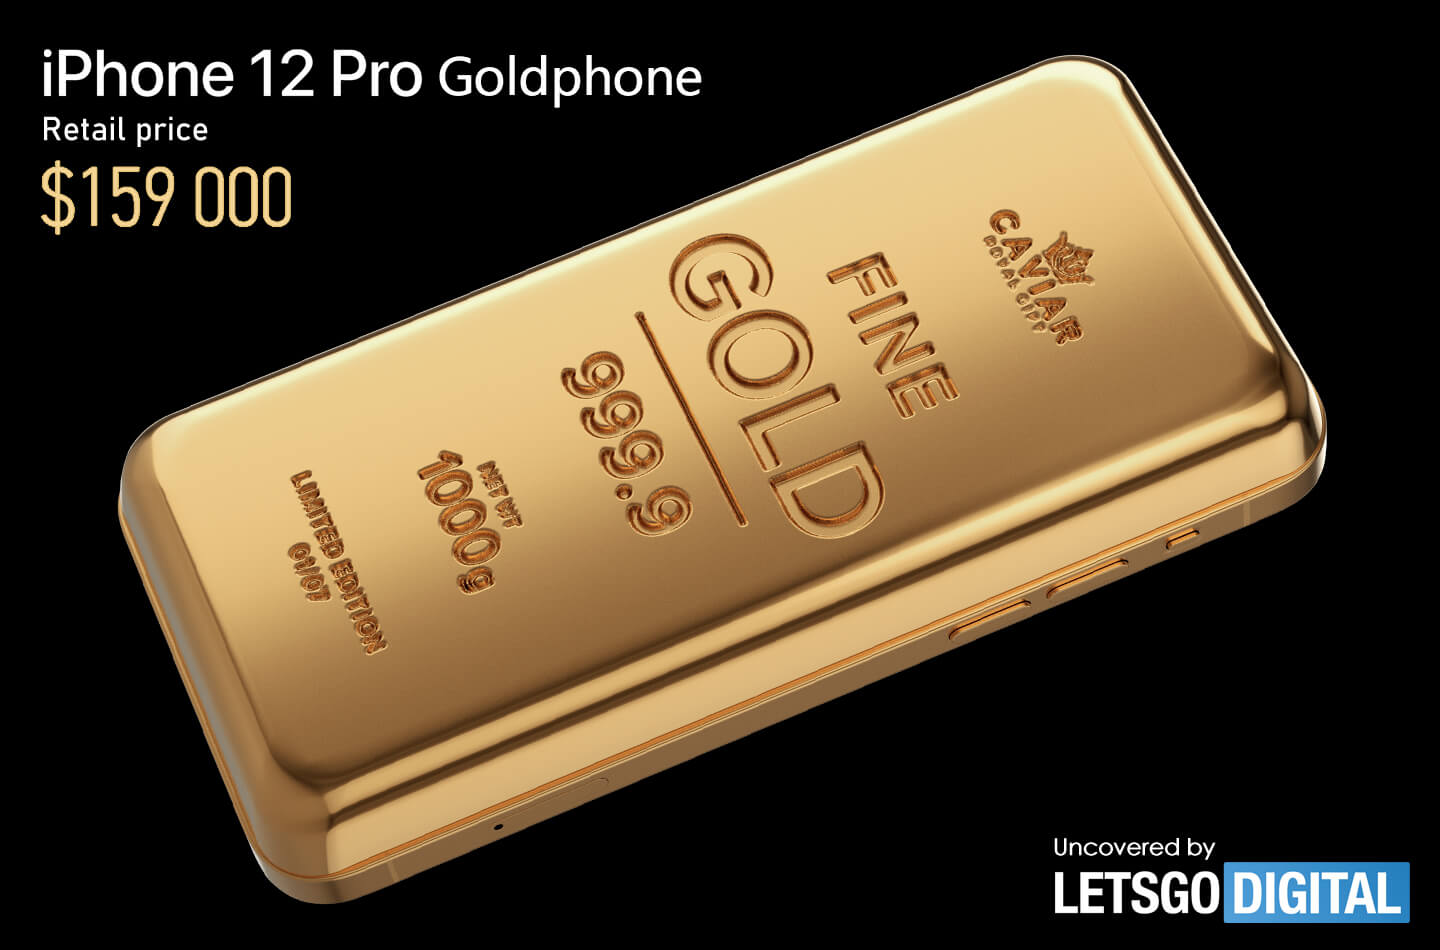 iPhone 12 Pro renovado como una barra de oro de 1 kilo